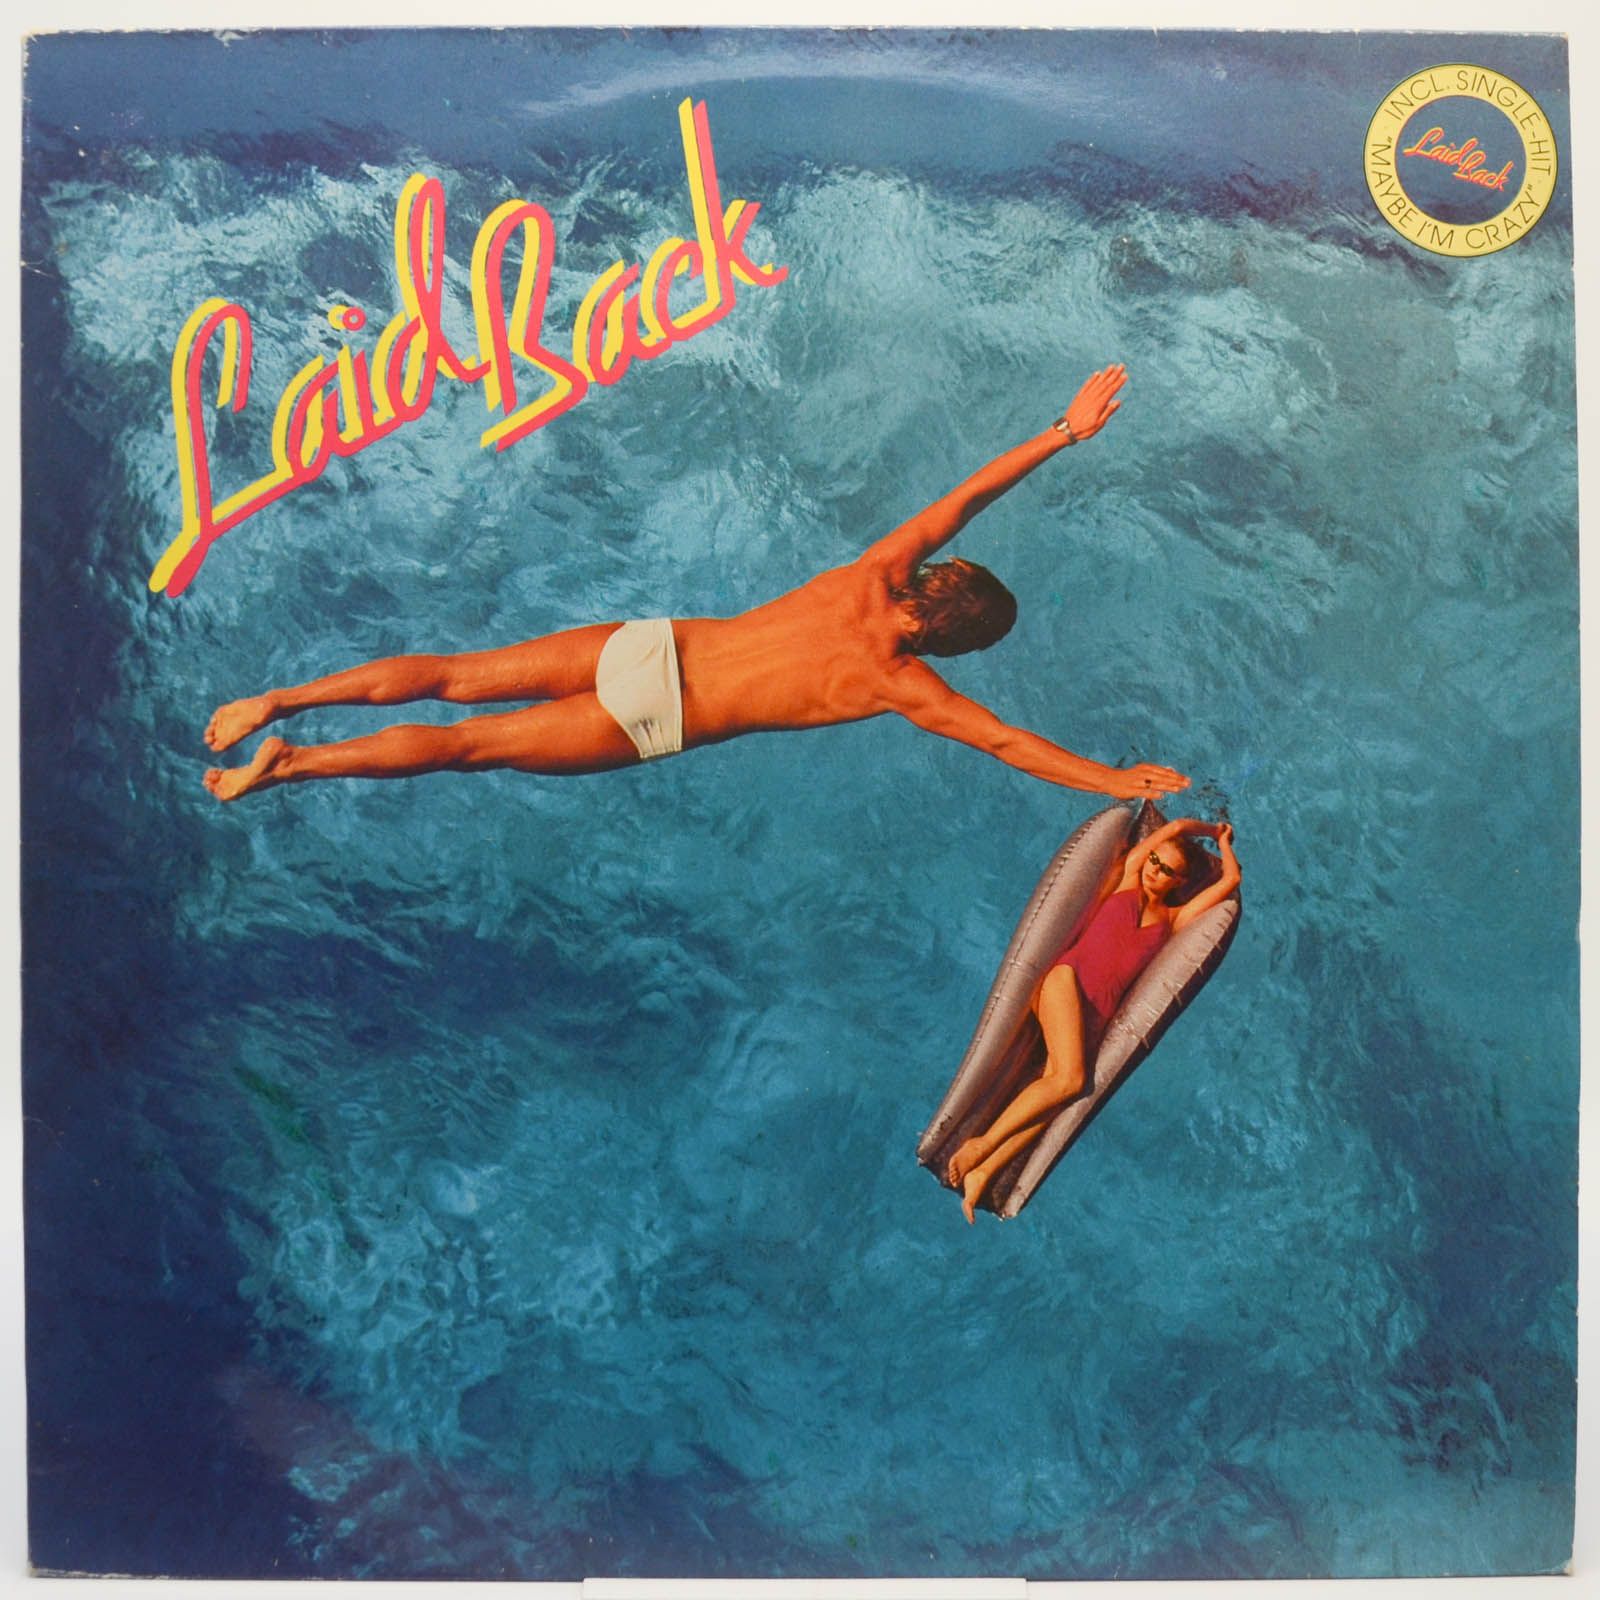 Laid Back — Laid Back, 1981